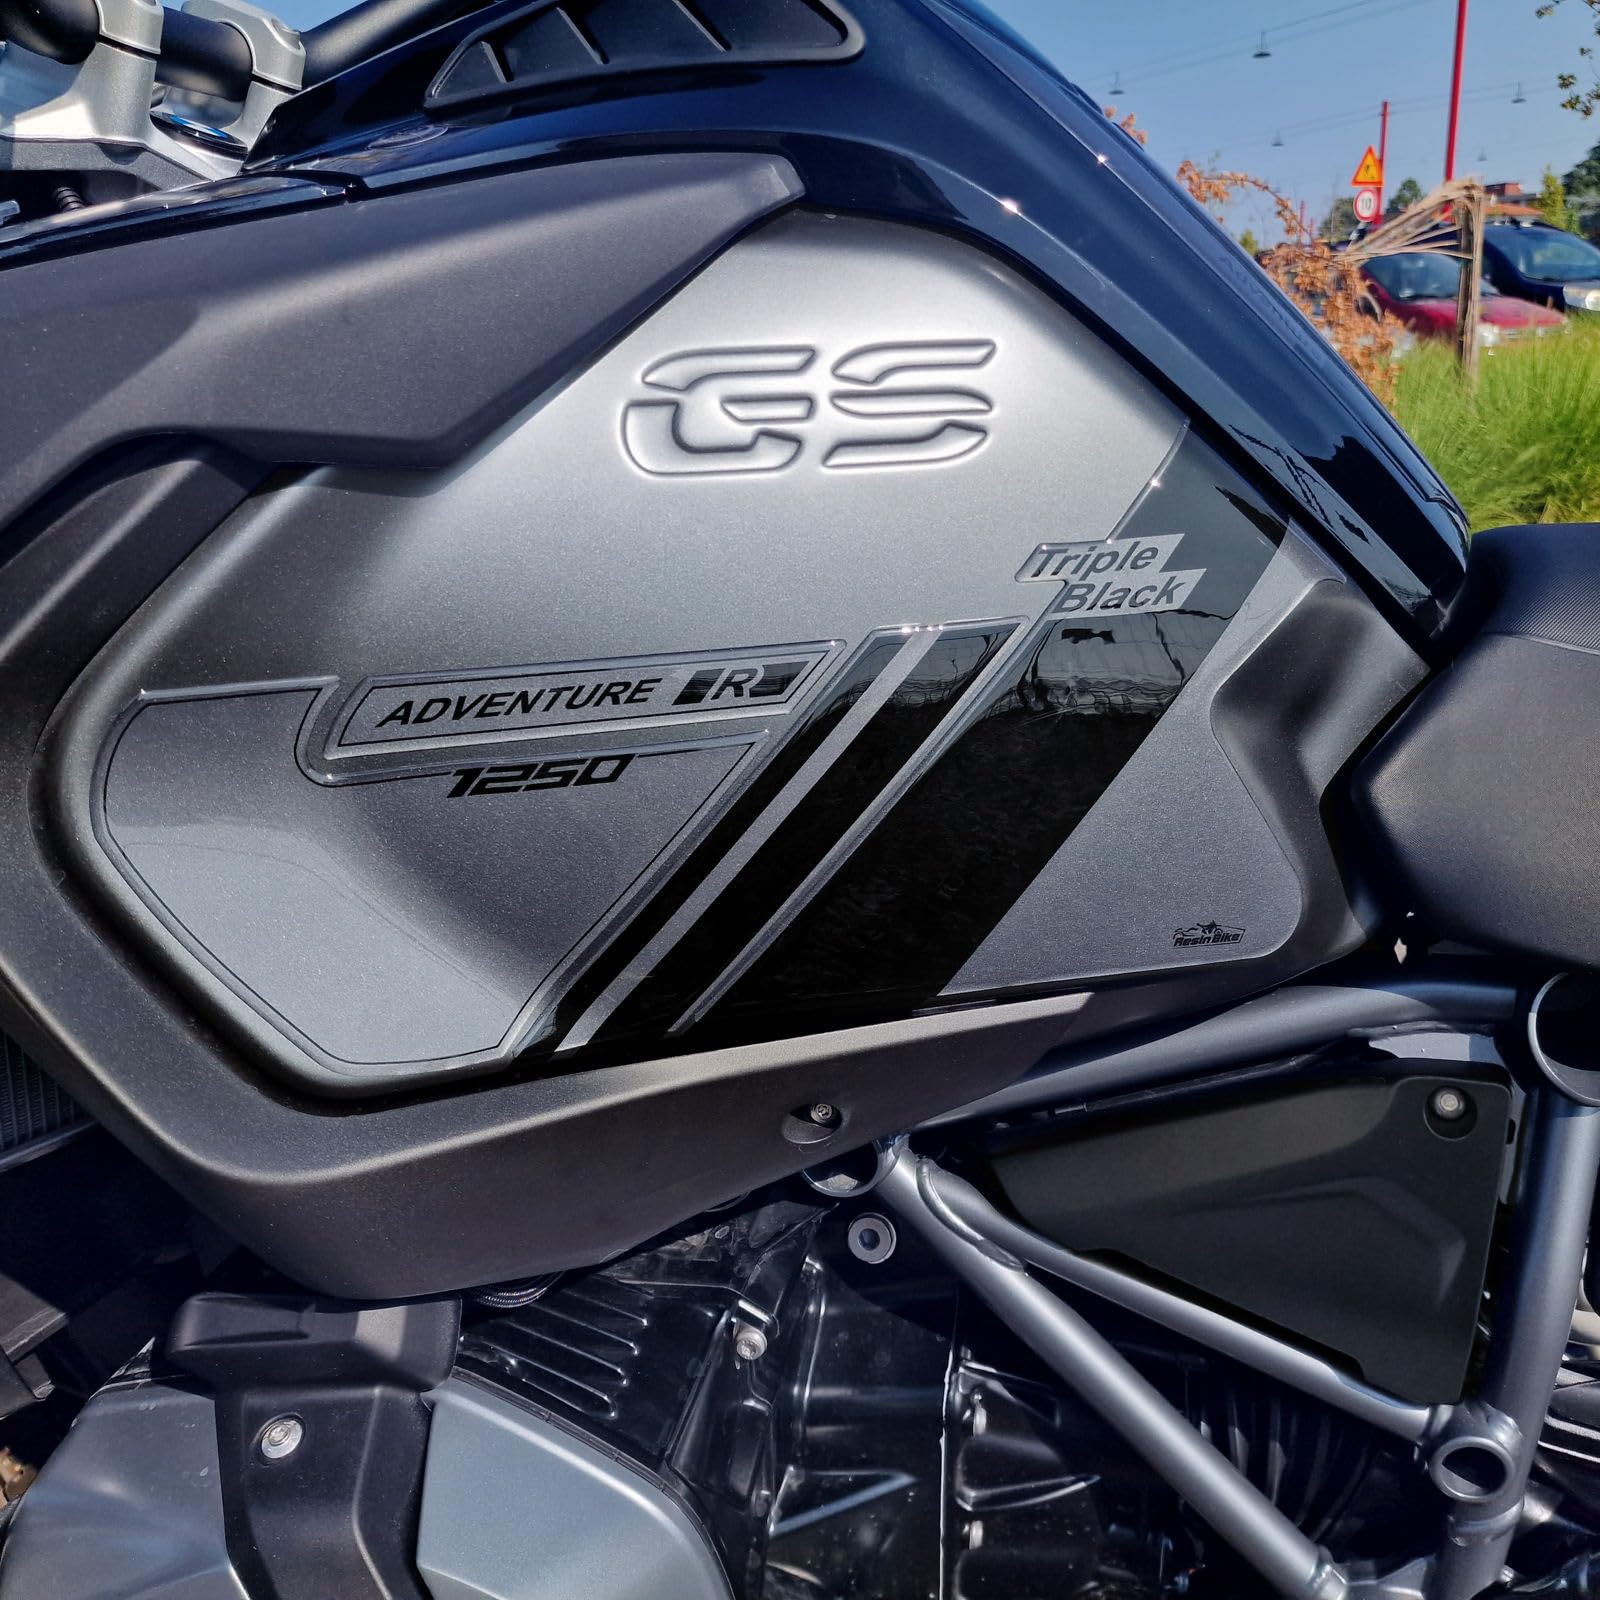 Resin Bike Aufkleber für Motorrad Kompatibel mit BMW R 1250 GS Adventure 2021-2022 Triple Black. Seitenschutz für den Tank vor Stößen und Kratzern. 3D-Harzklebstoff – Stickers - Made in Italy von Resin Bike